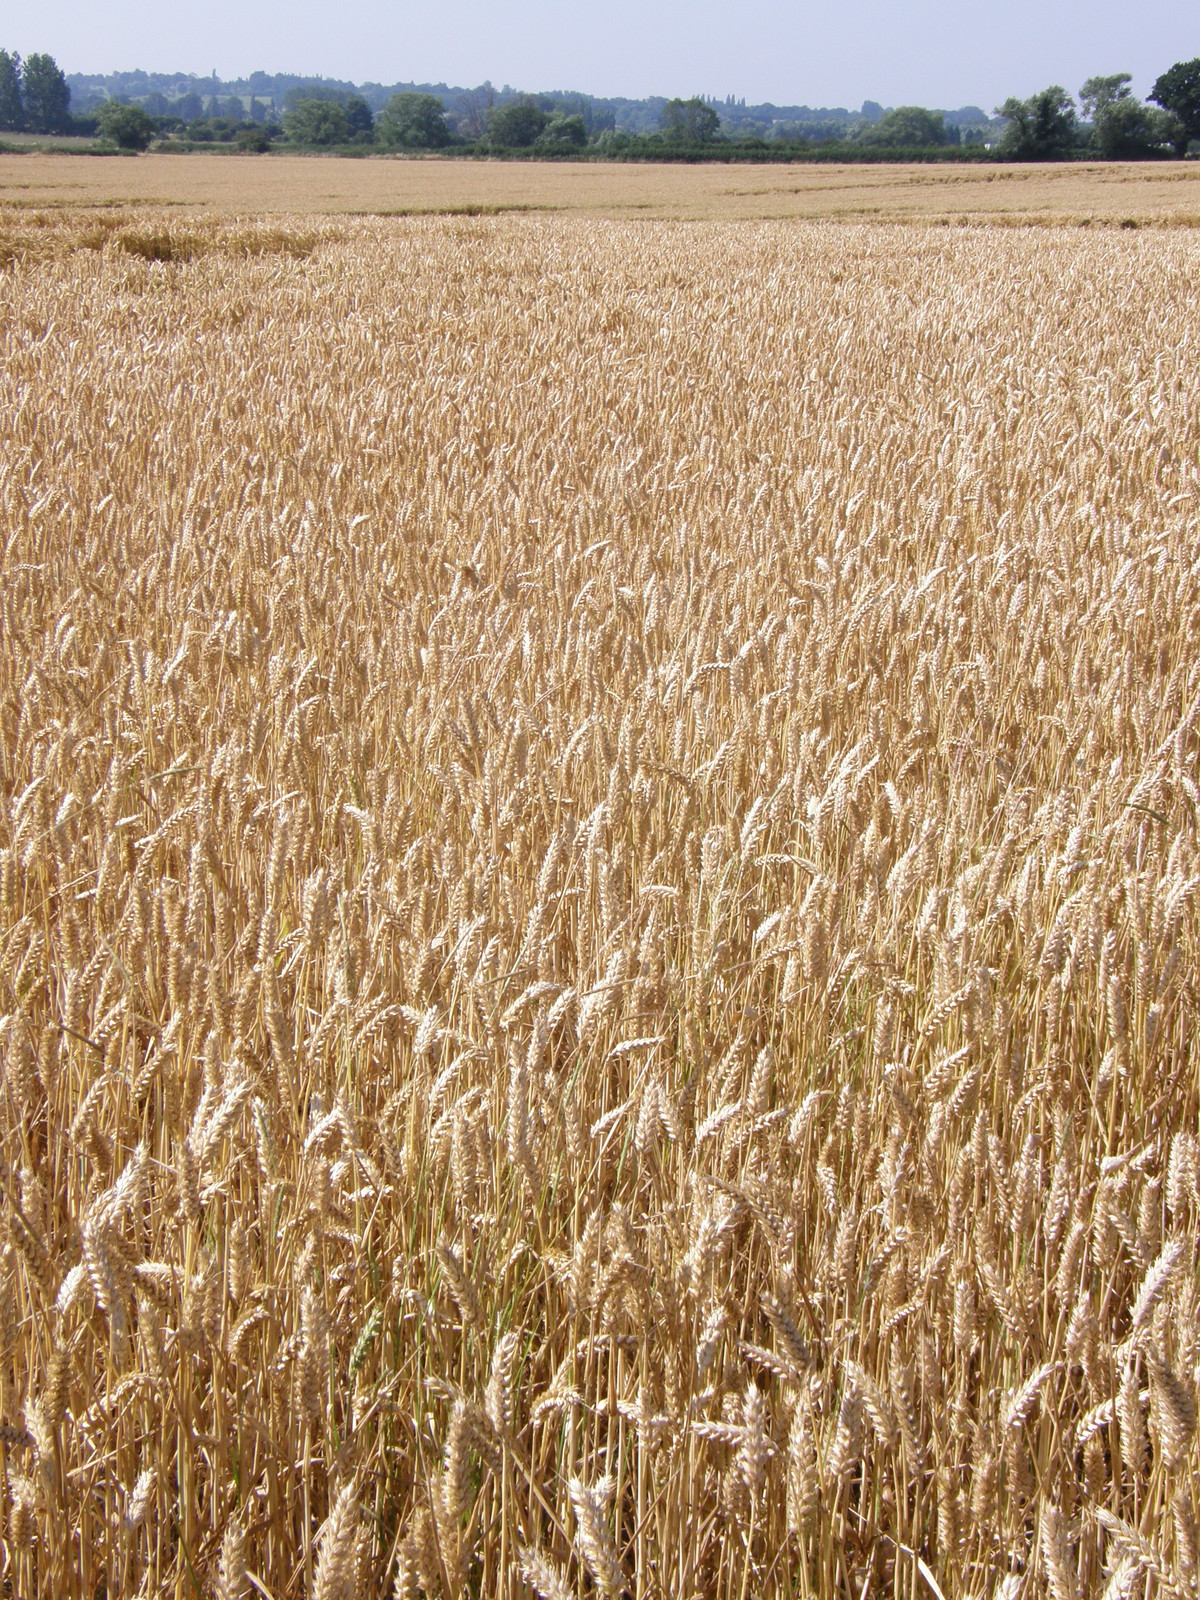 A field of wheat near Debden